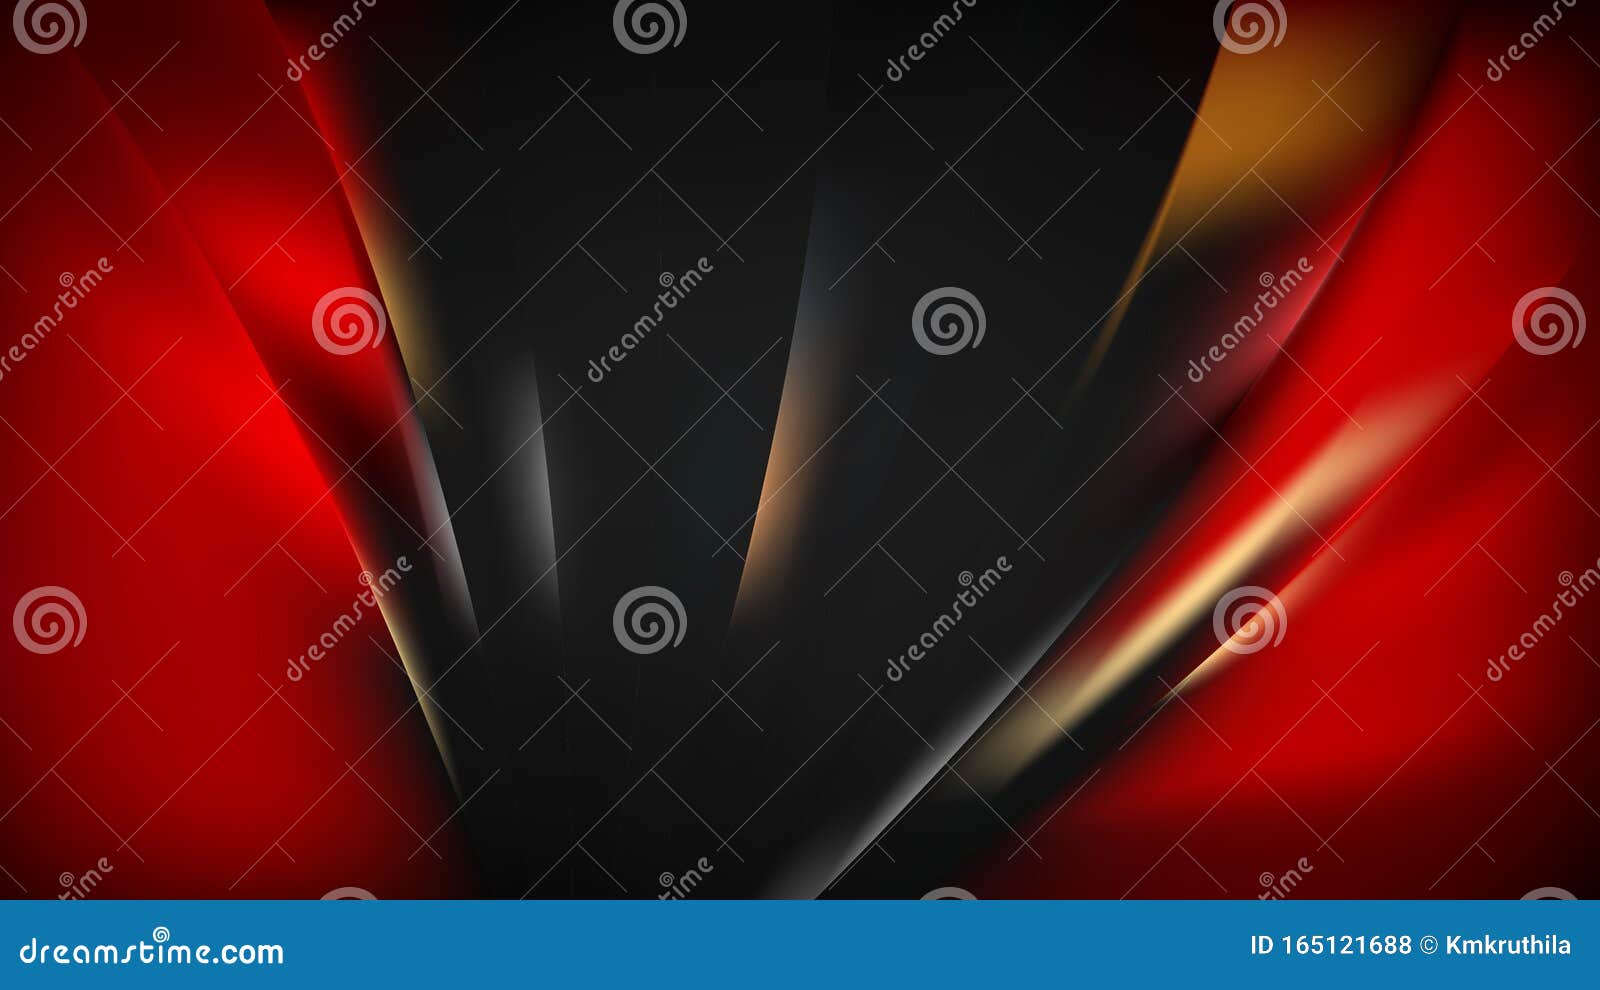 Черно-красный и оранжевый фон Прекрасный элегантный графический дизайн иллюстрации